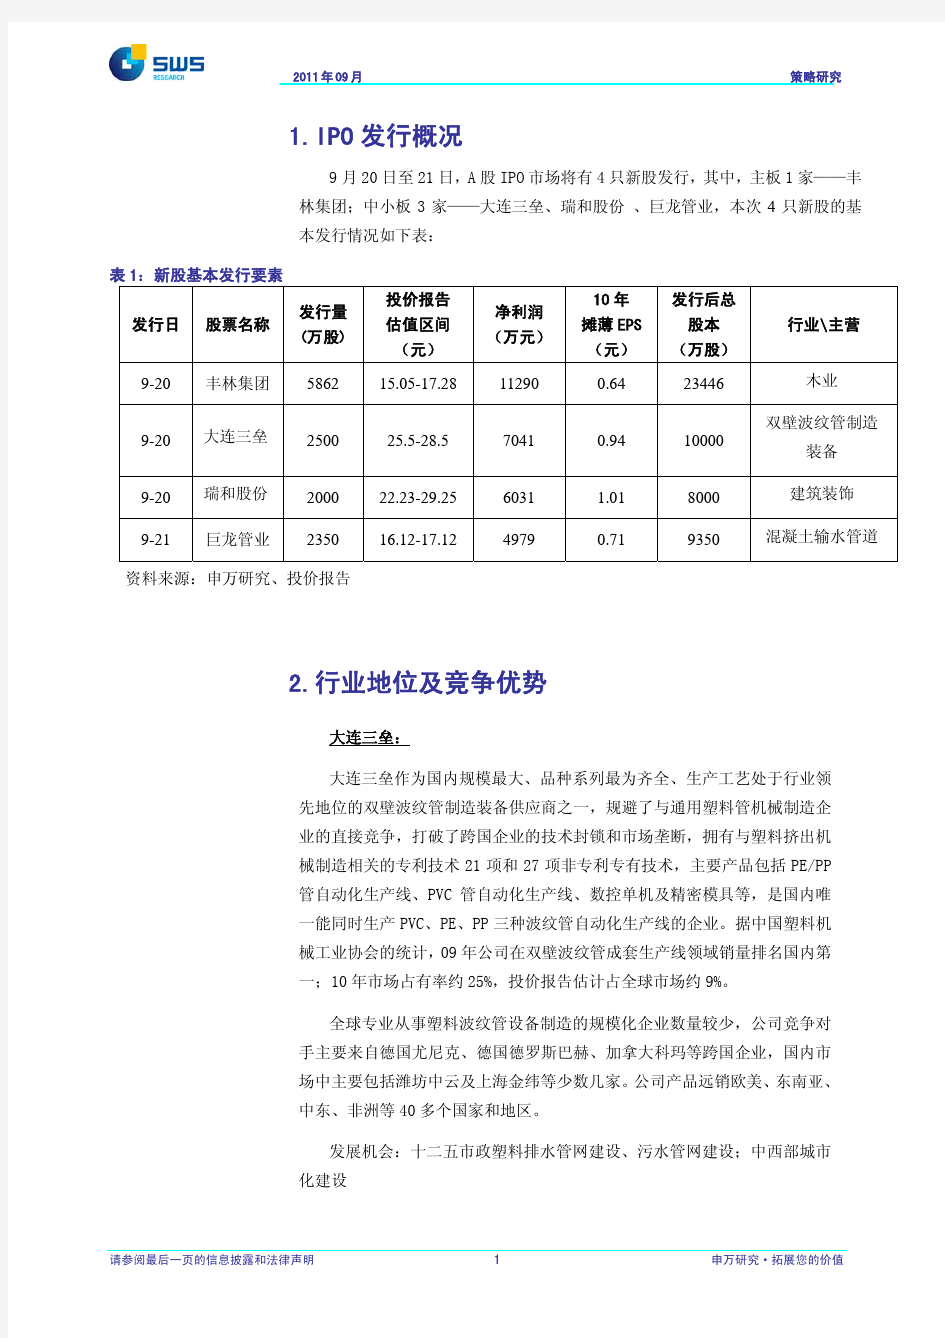 申银万国-丰林集团等新股之IPO申购策略-110915